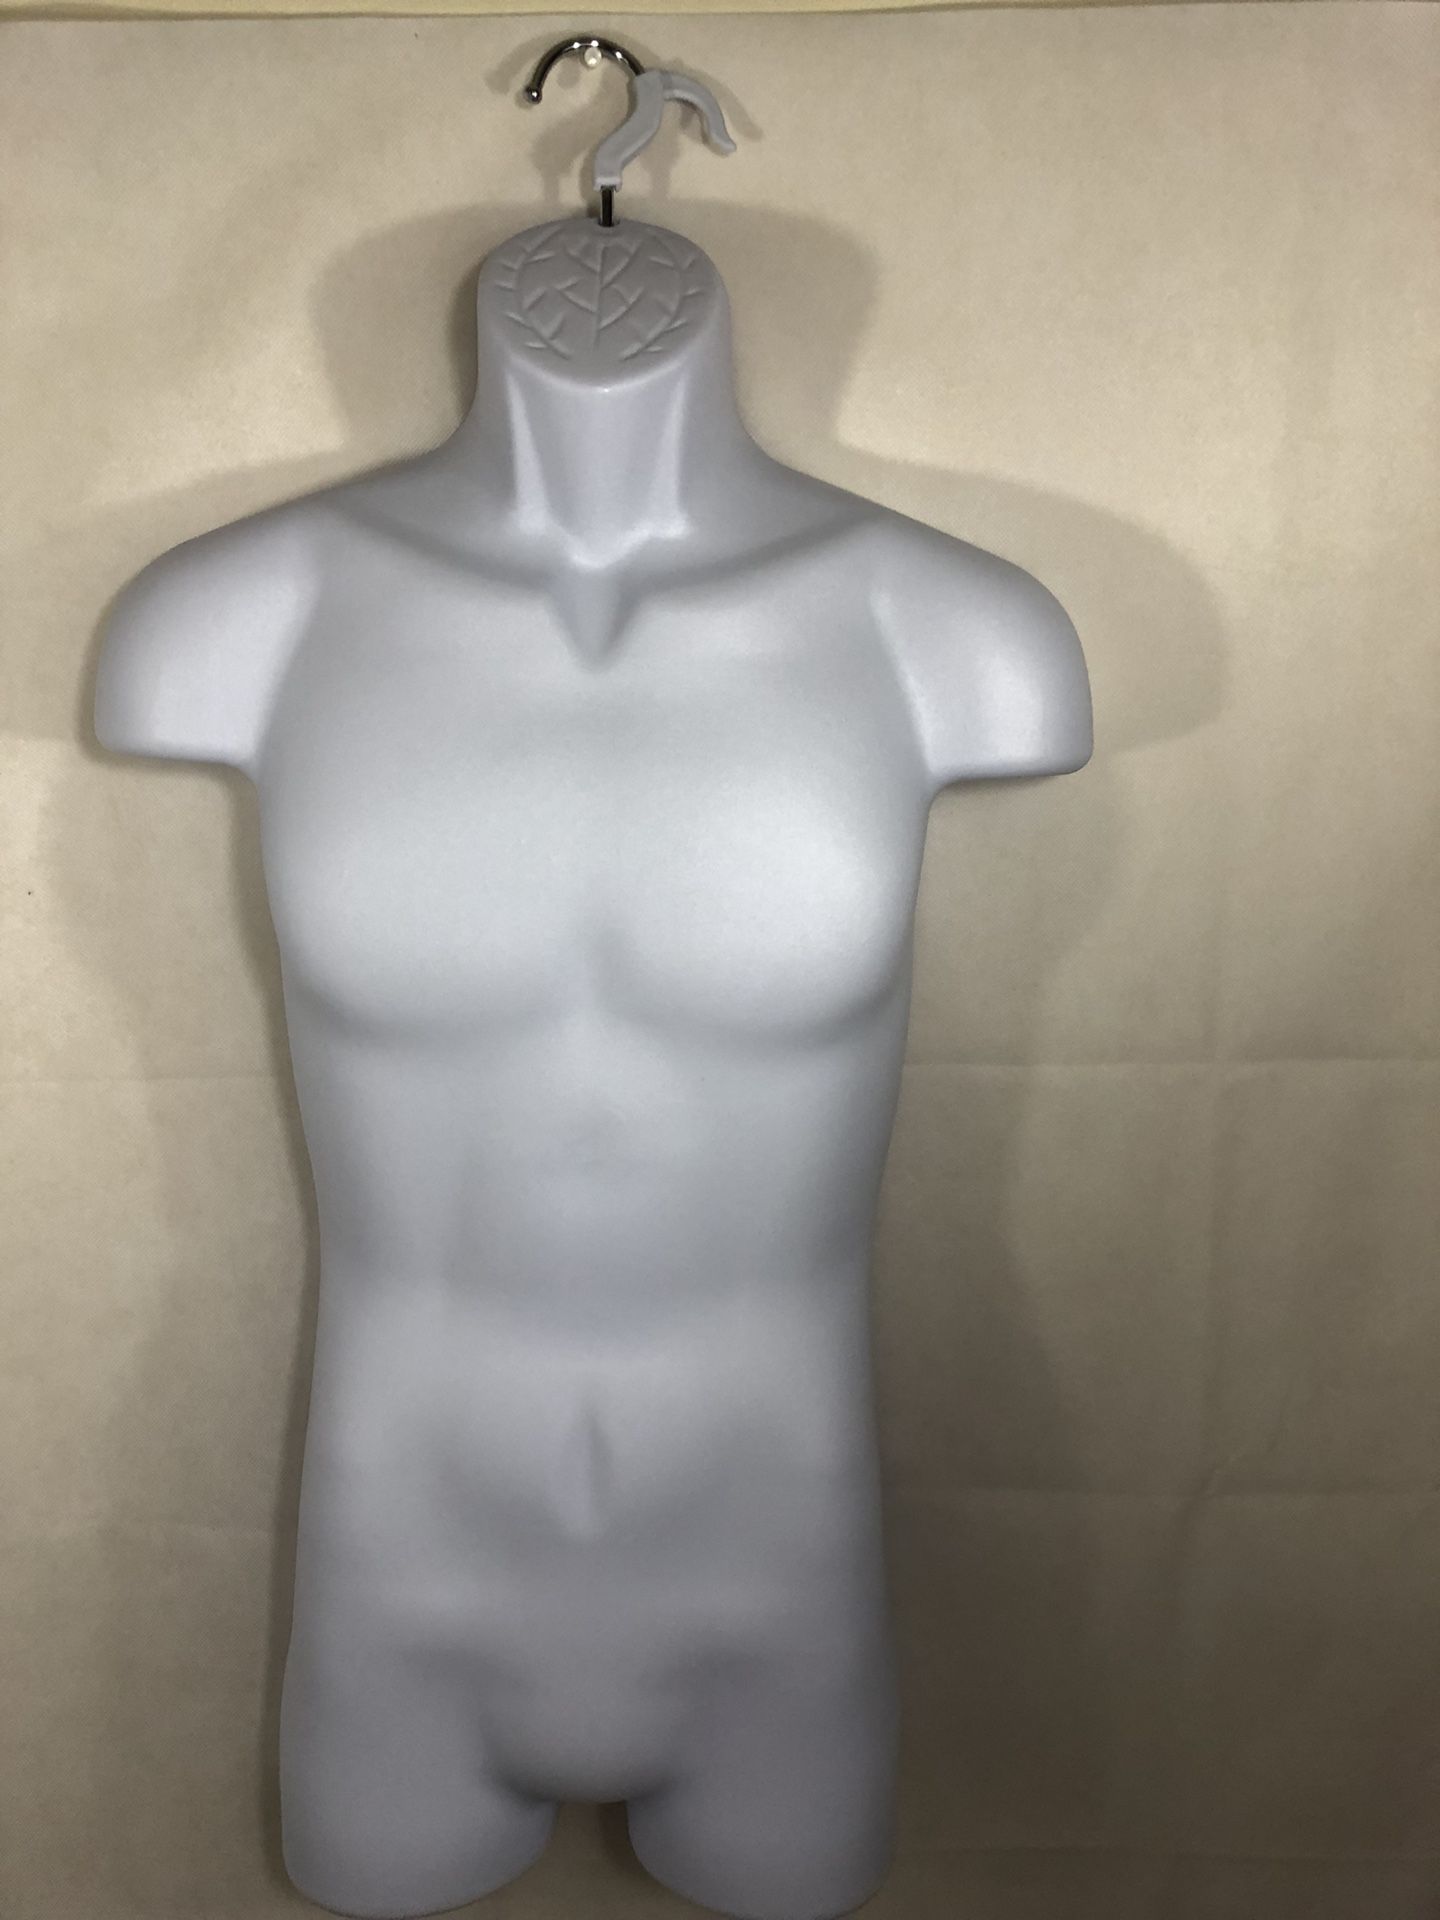 Male Full Body Torso Plastic Mannequin White